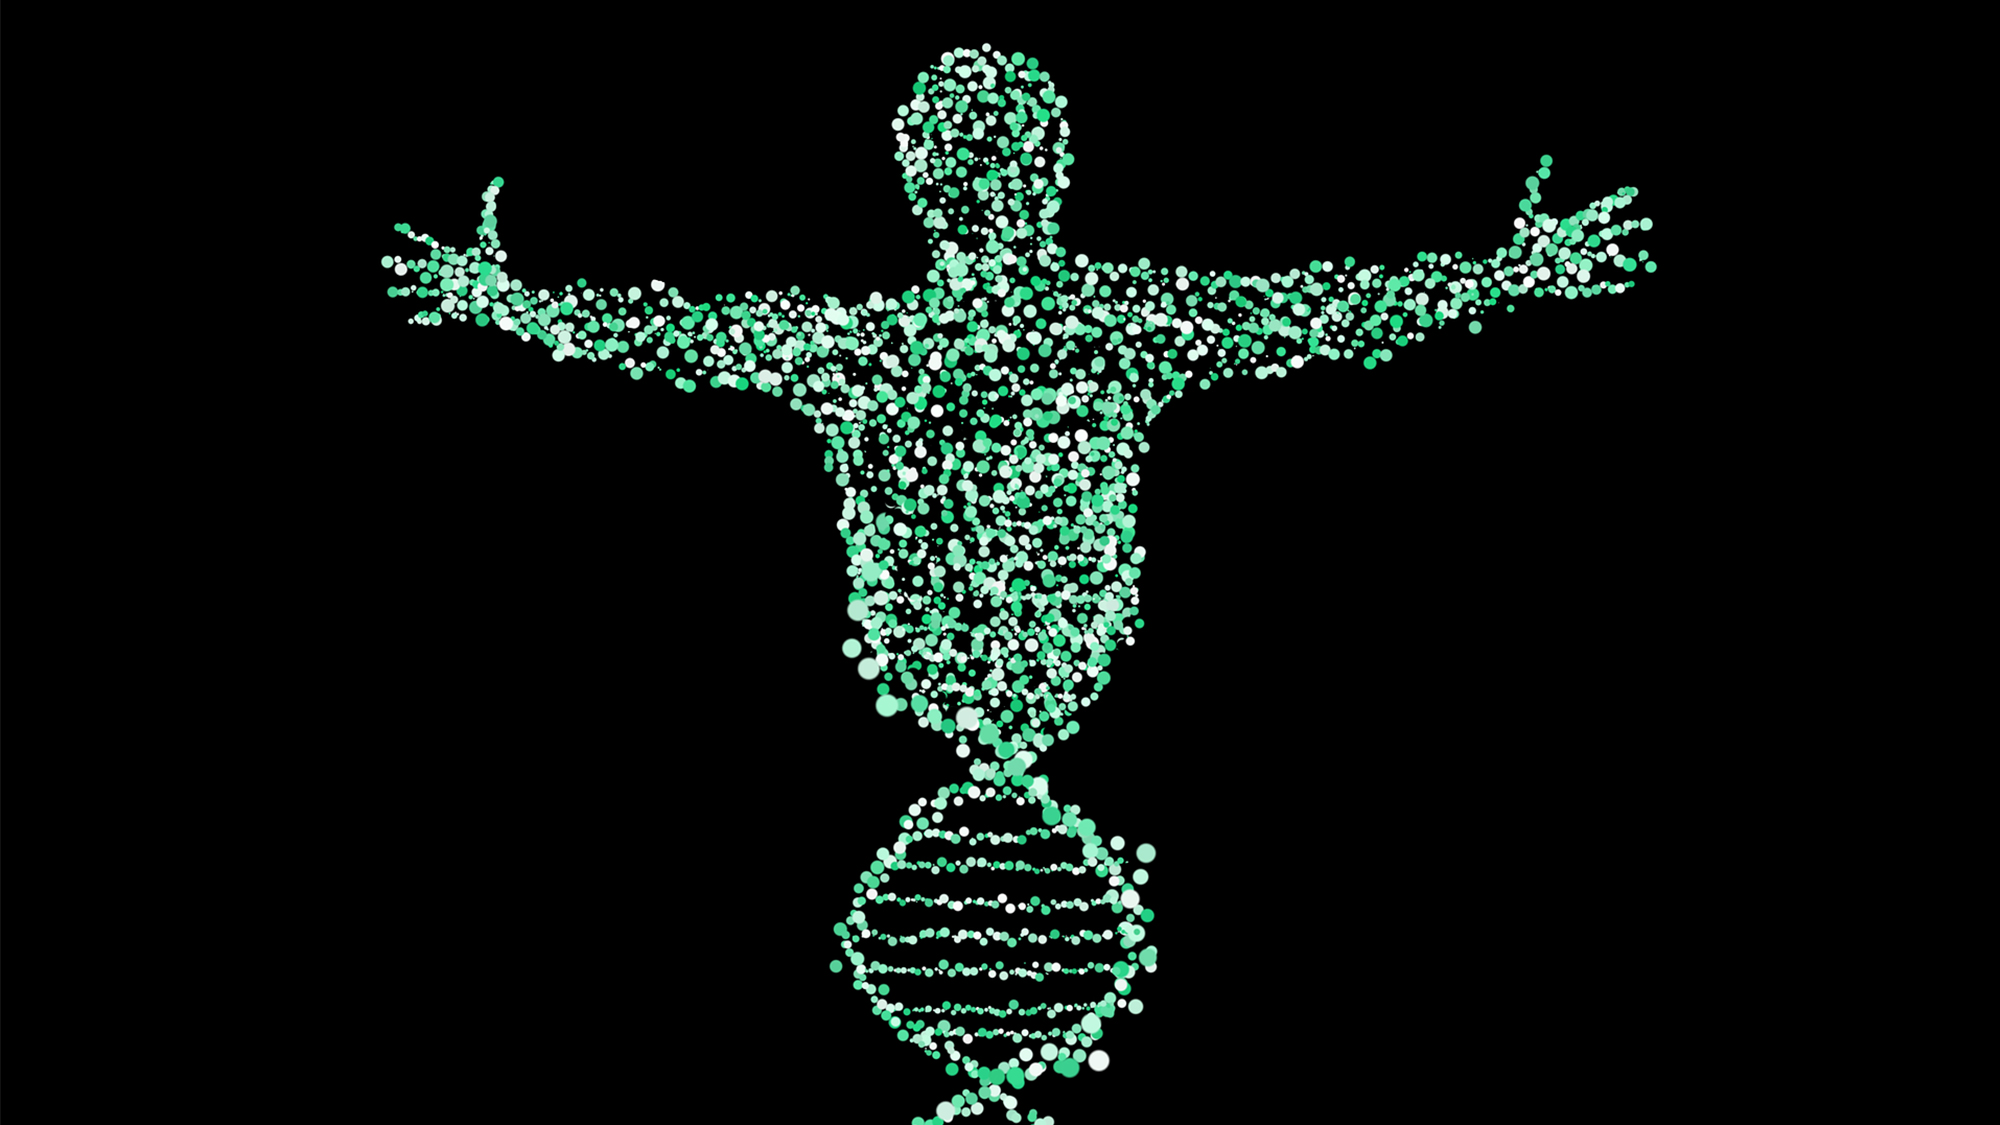 Cómo somos no viene determinado tan solo por nuestros genes. El ambiente y la epigenética són muy importantes. Imagen de Patrick Neufelder en Pixabay.